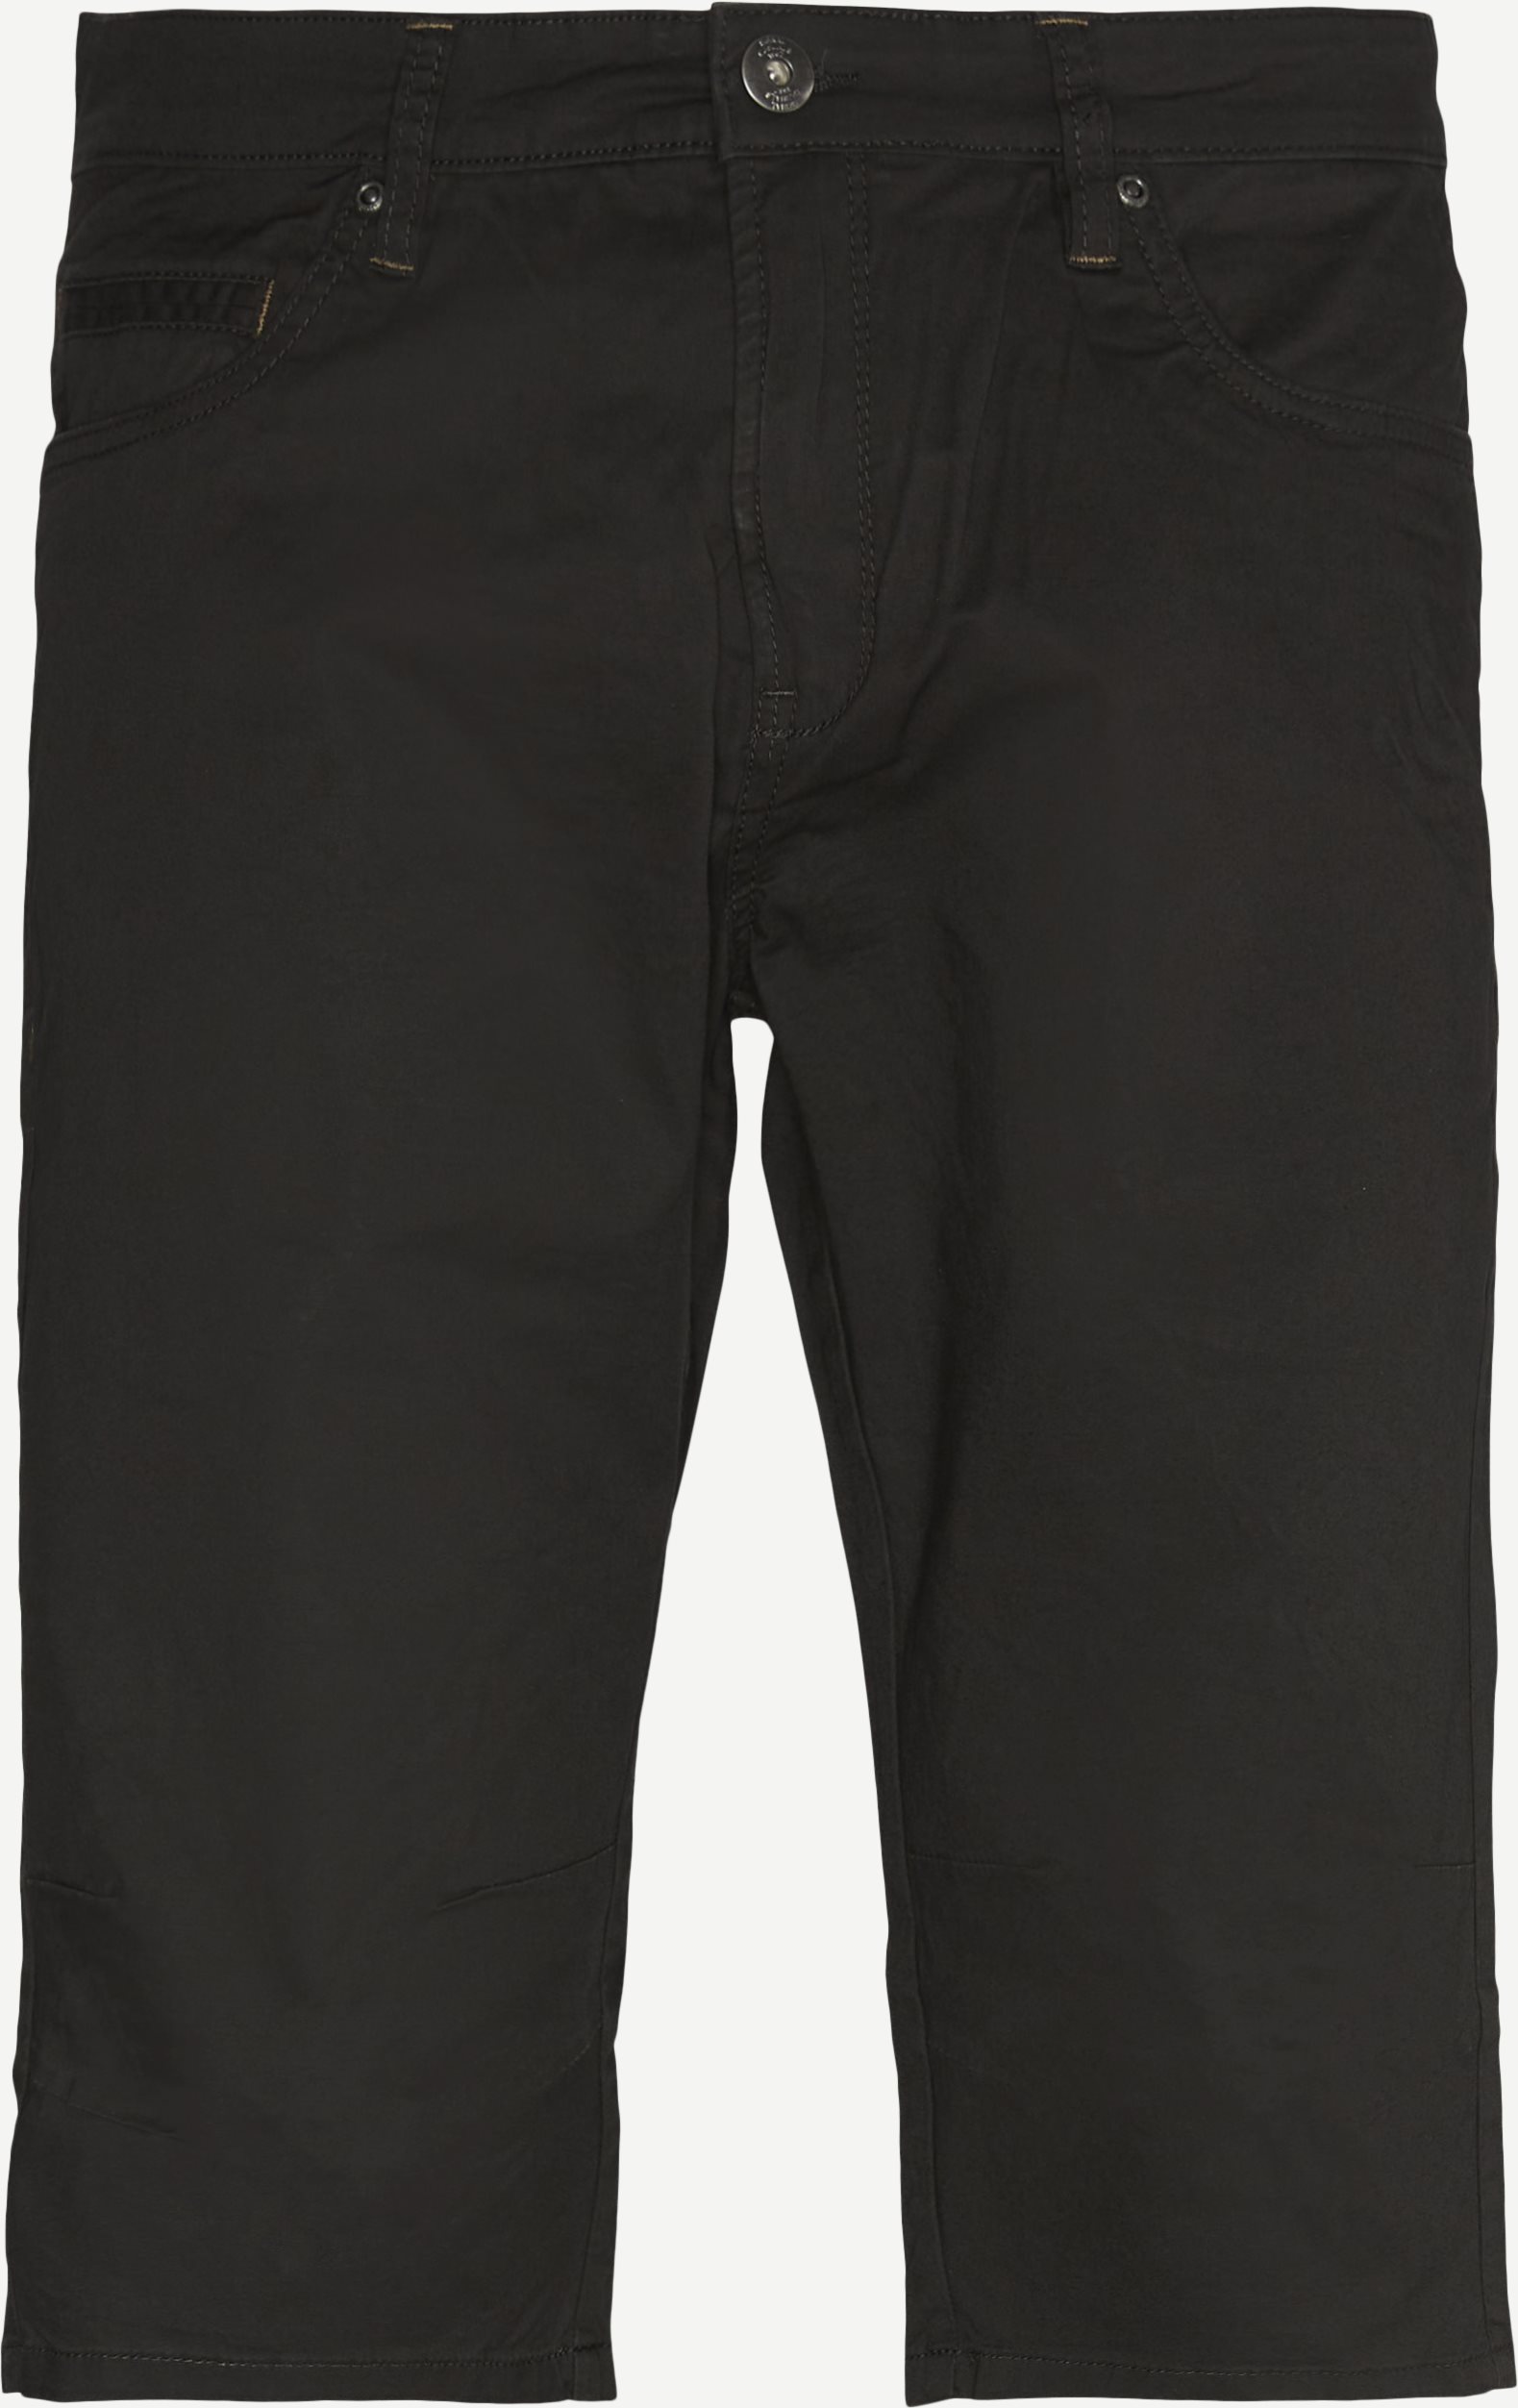 11227 Shorts - Shorts - Regular fit - Army